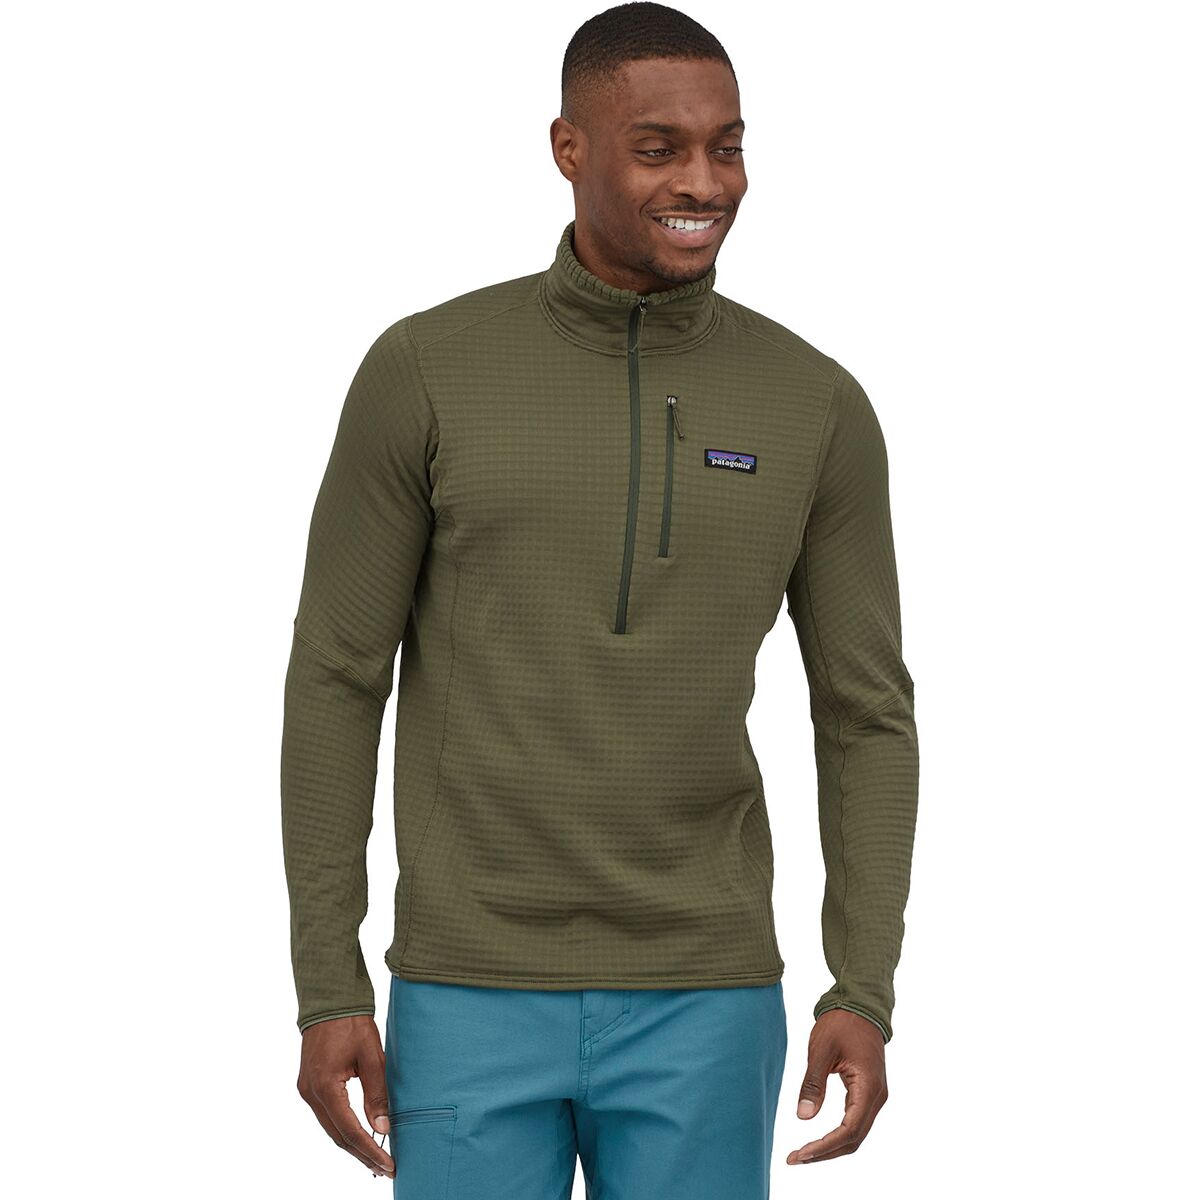 Avalanche Sweater Pullover Men's XL Brown Heather Fleece Sweatshirt 1/4 Zip  New